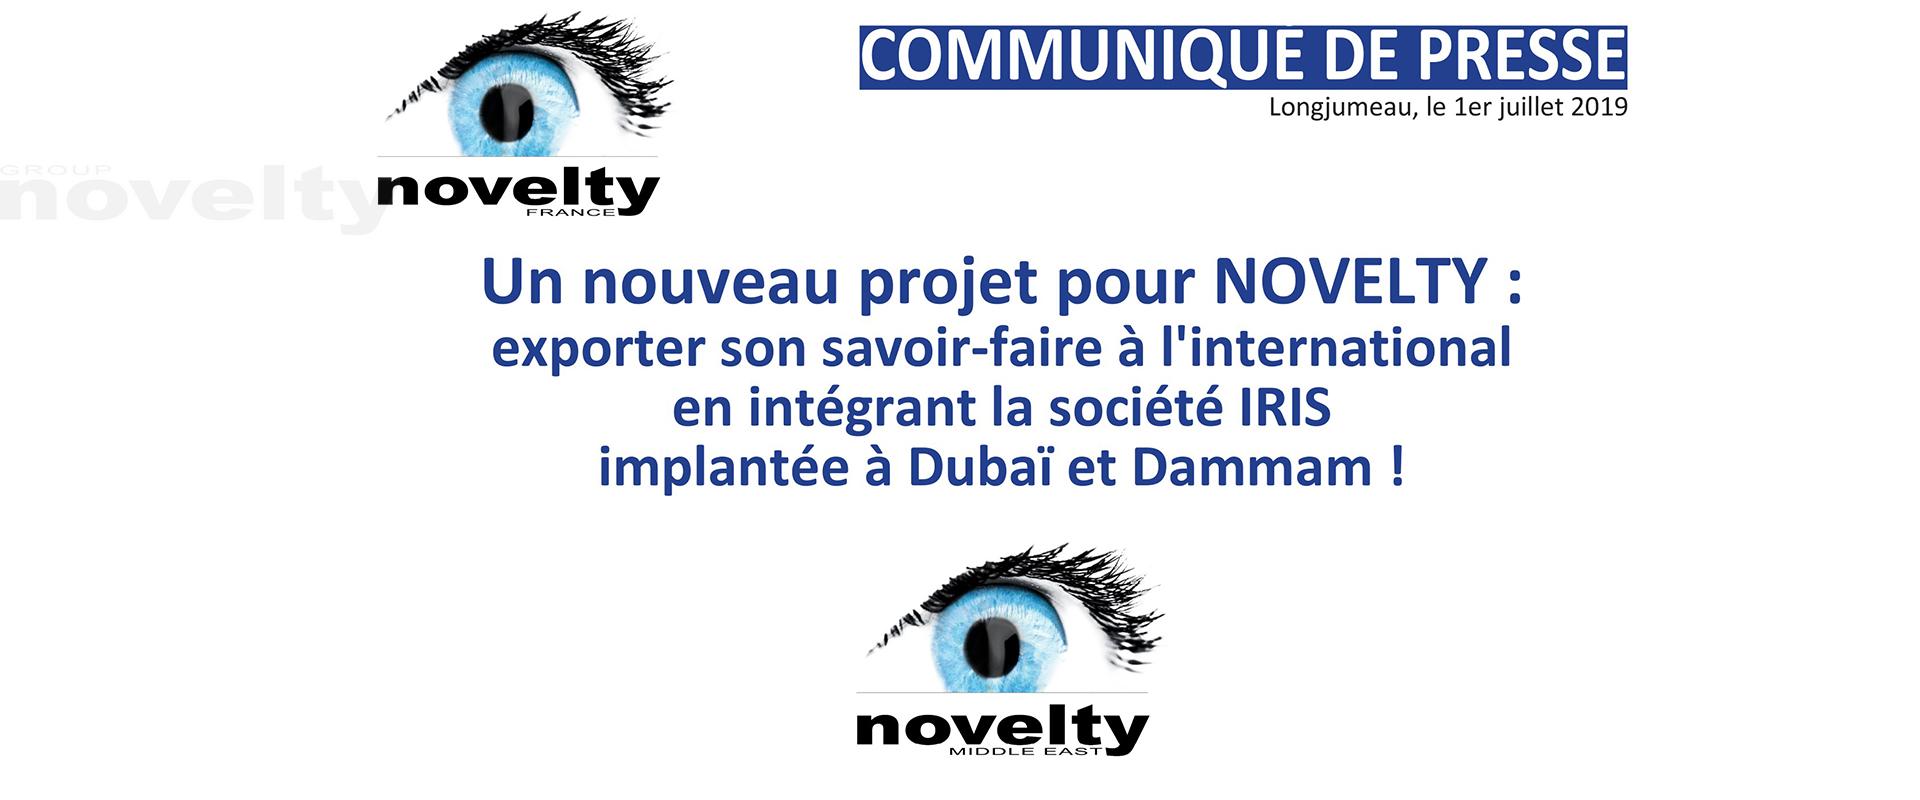 Visuel Un nouveau projet pour NOVELTY : exporter son savoir-faire à l'international en intégrant la société IRIS implantée à Dubaï et Dammam ! 